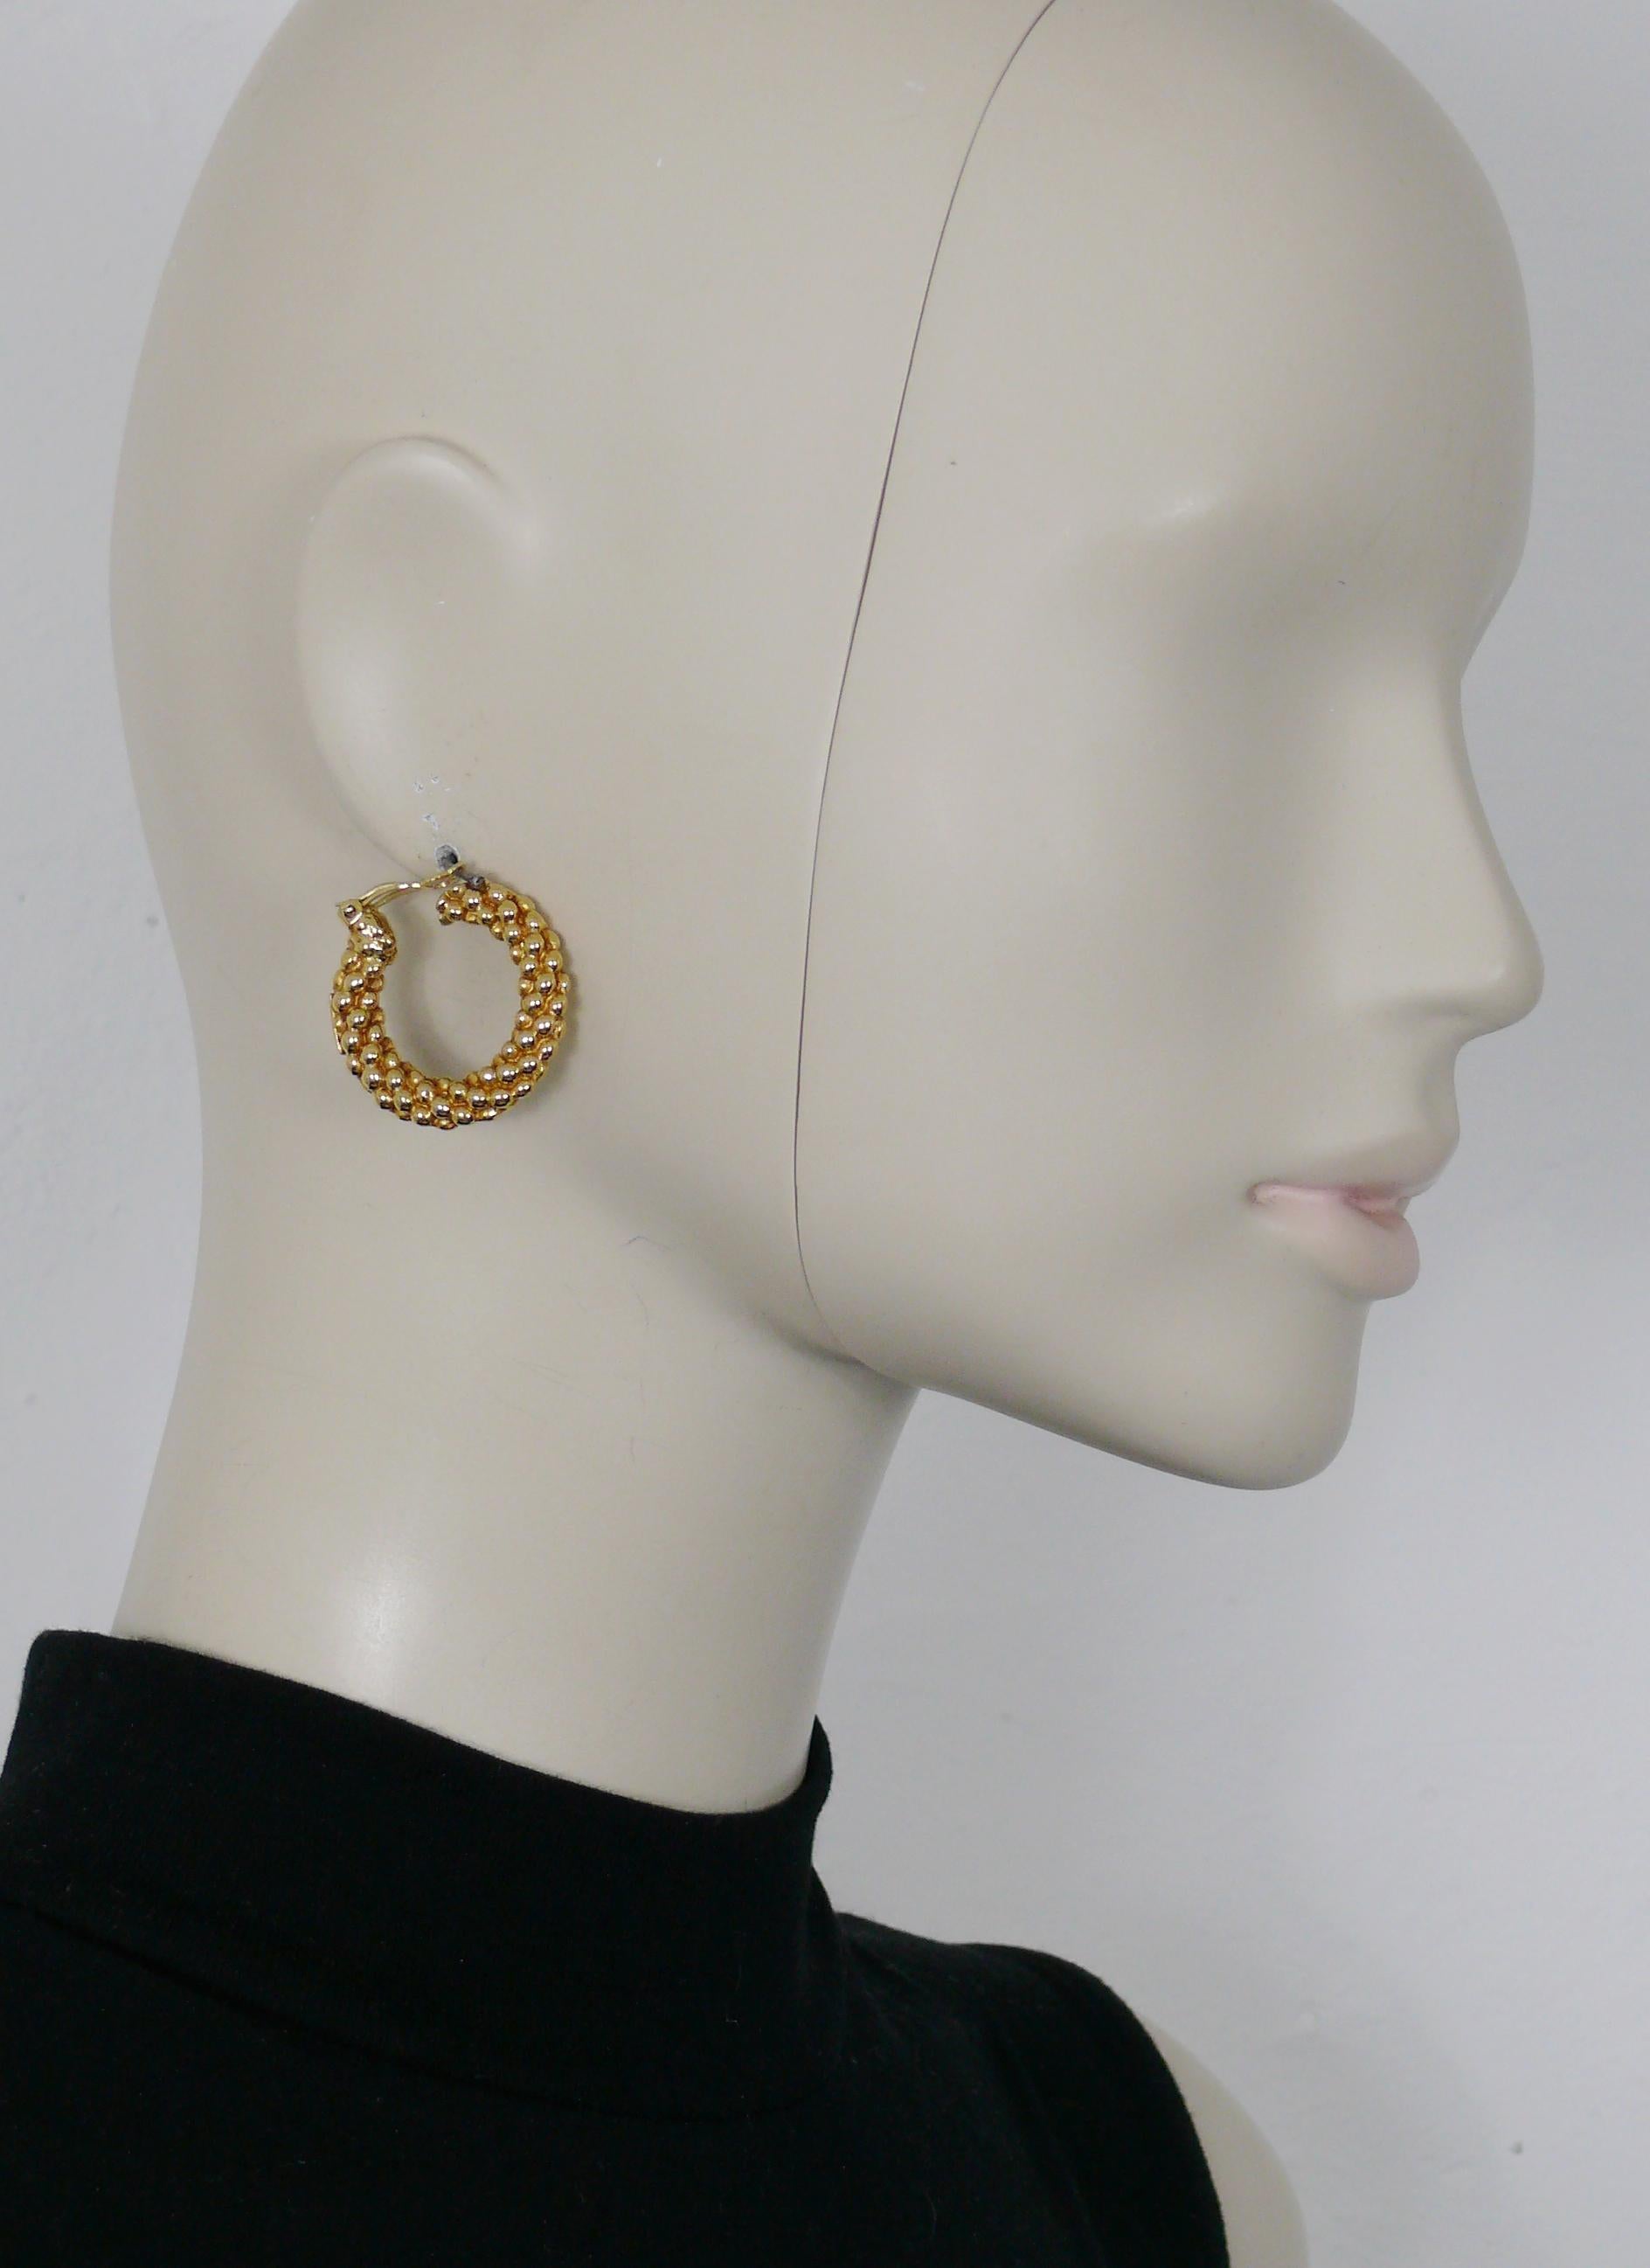 YVES SAINT LAURENT Vintage-Ohrringe mit goldfarbenem, strukturiertem Ring (Clip-on).

Geprägtes YSL Made in France.

Ungefähre Maße: Durchmesser ca. 3 cm (1,18 Zoll).

SCHMUCK-ZUSTANDSTABELLE
- Neu oder nie getragen: Artikel ist in einwandfreiem